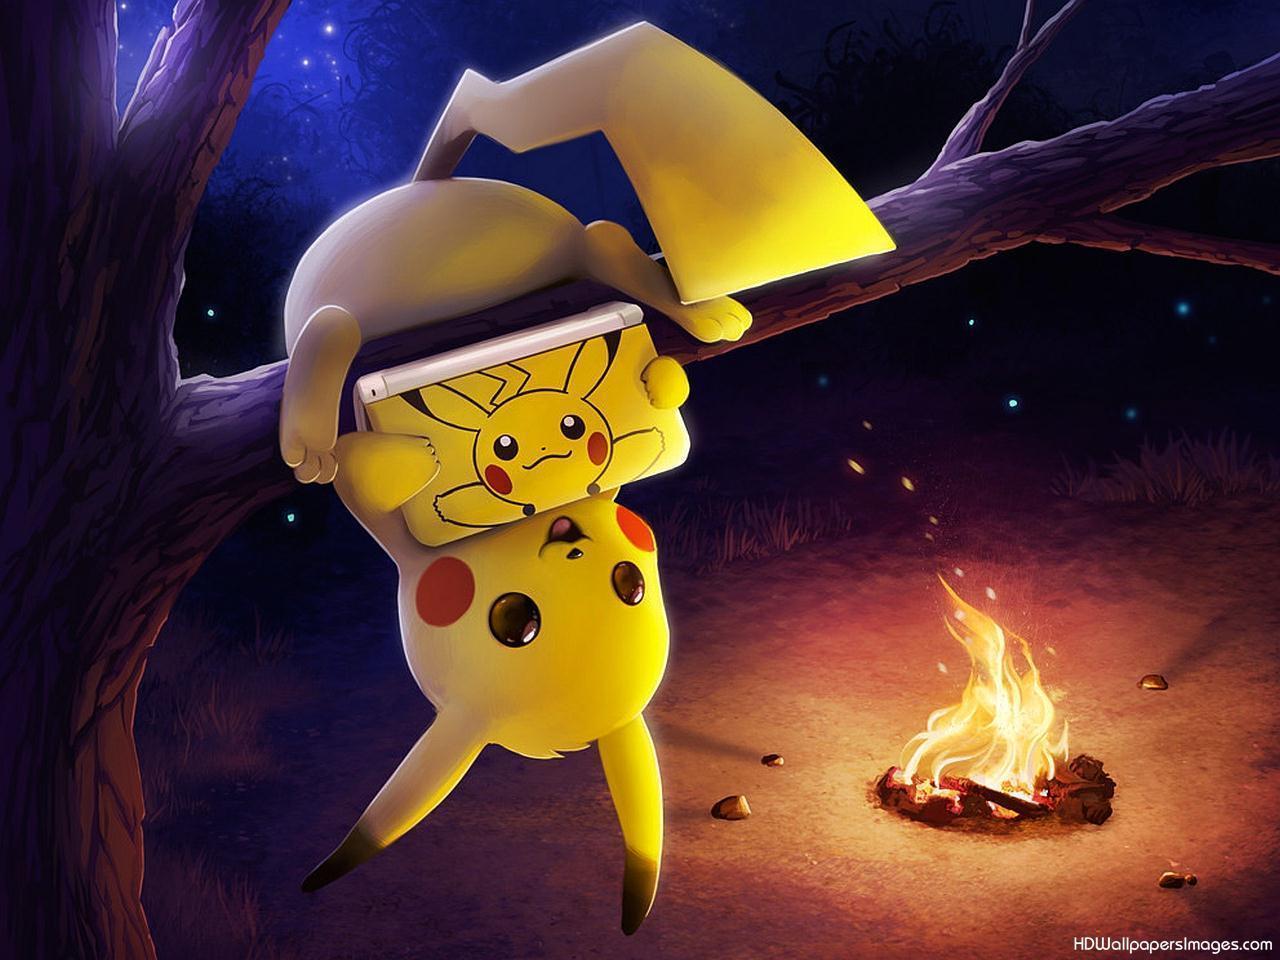 Pikachu Pokemon Wallpaper. HD Wallpaper Image